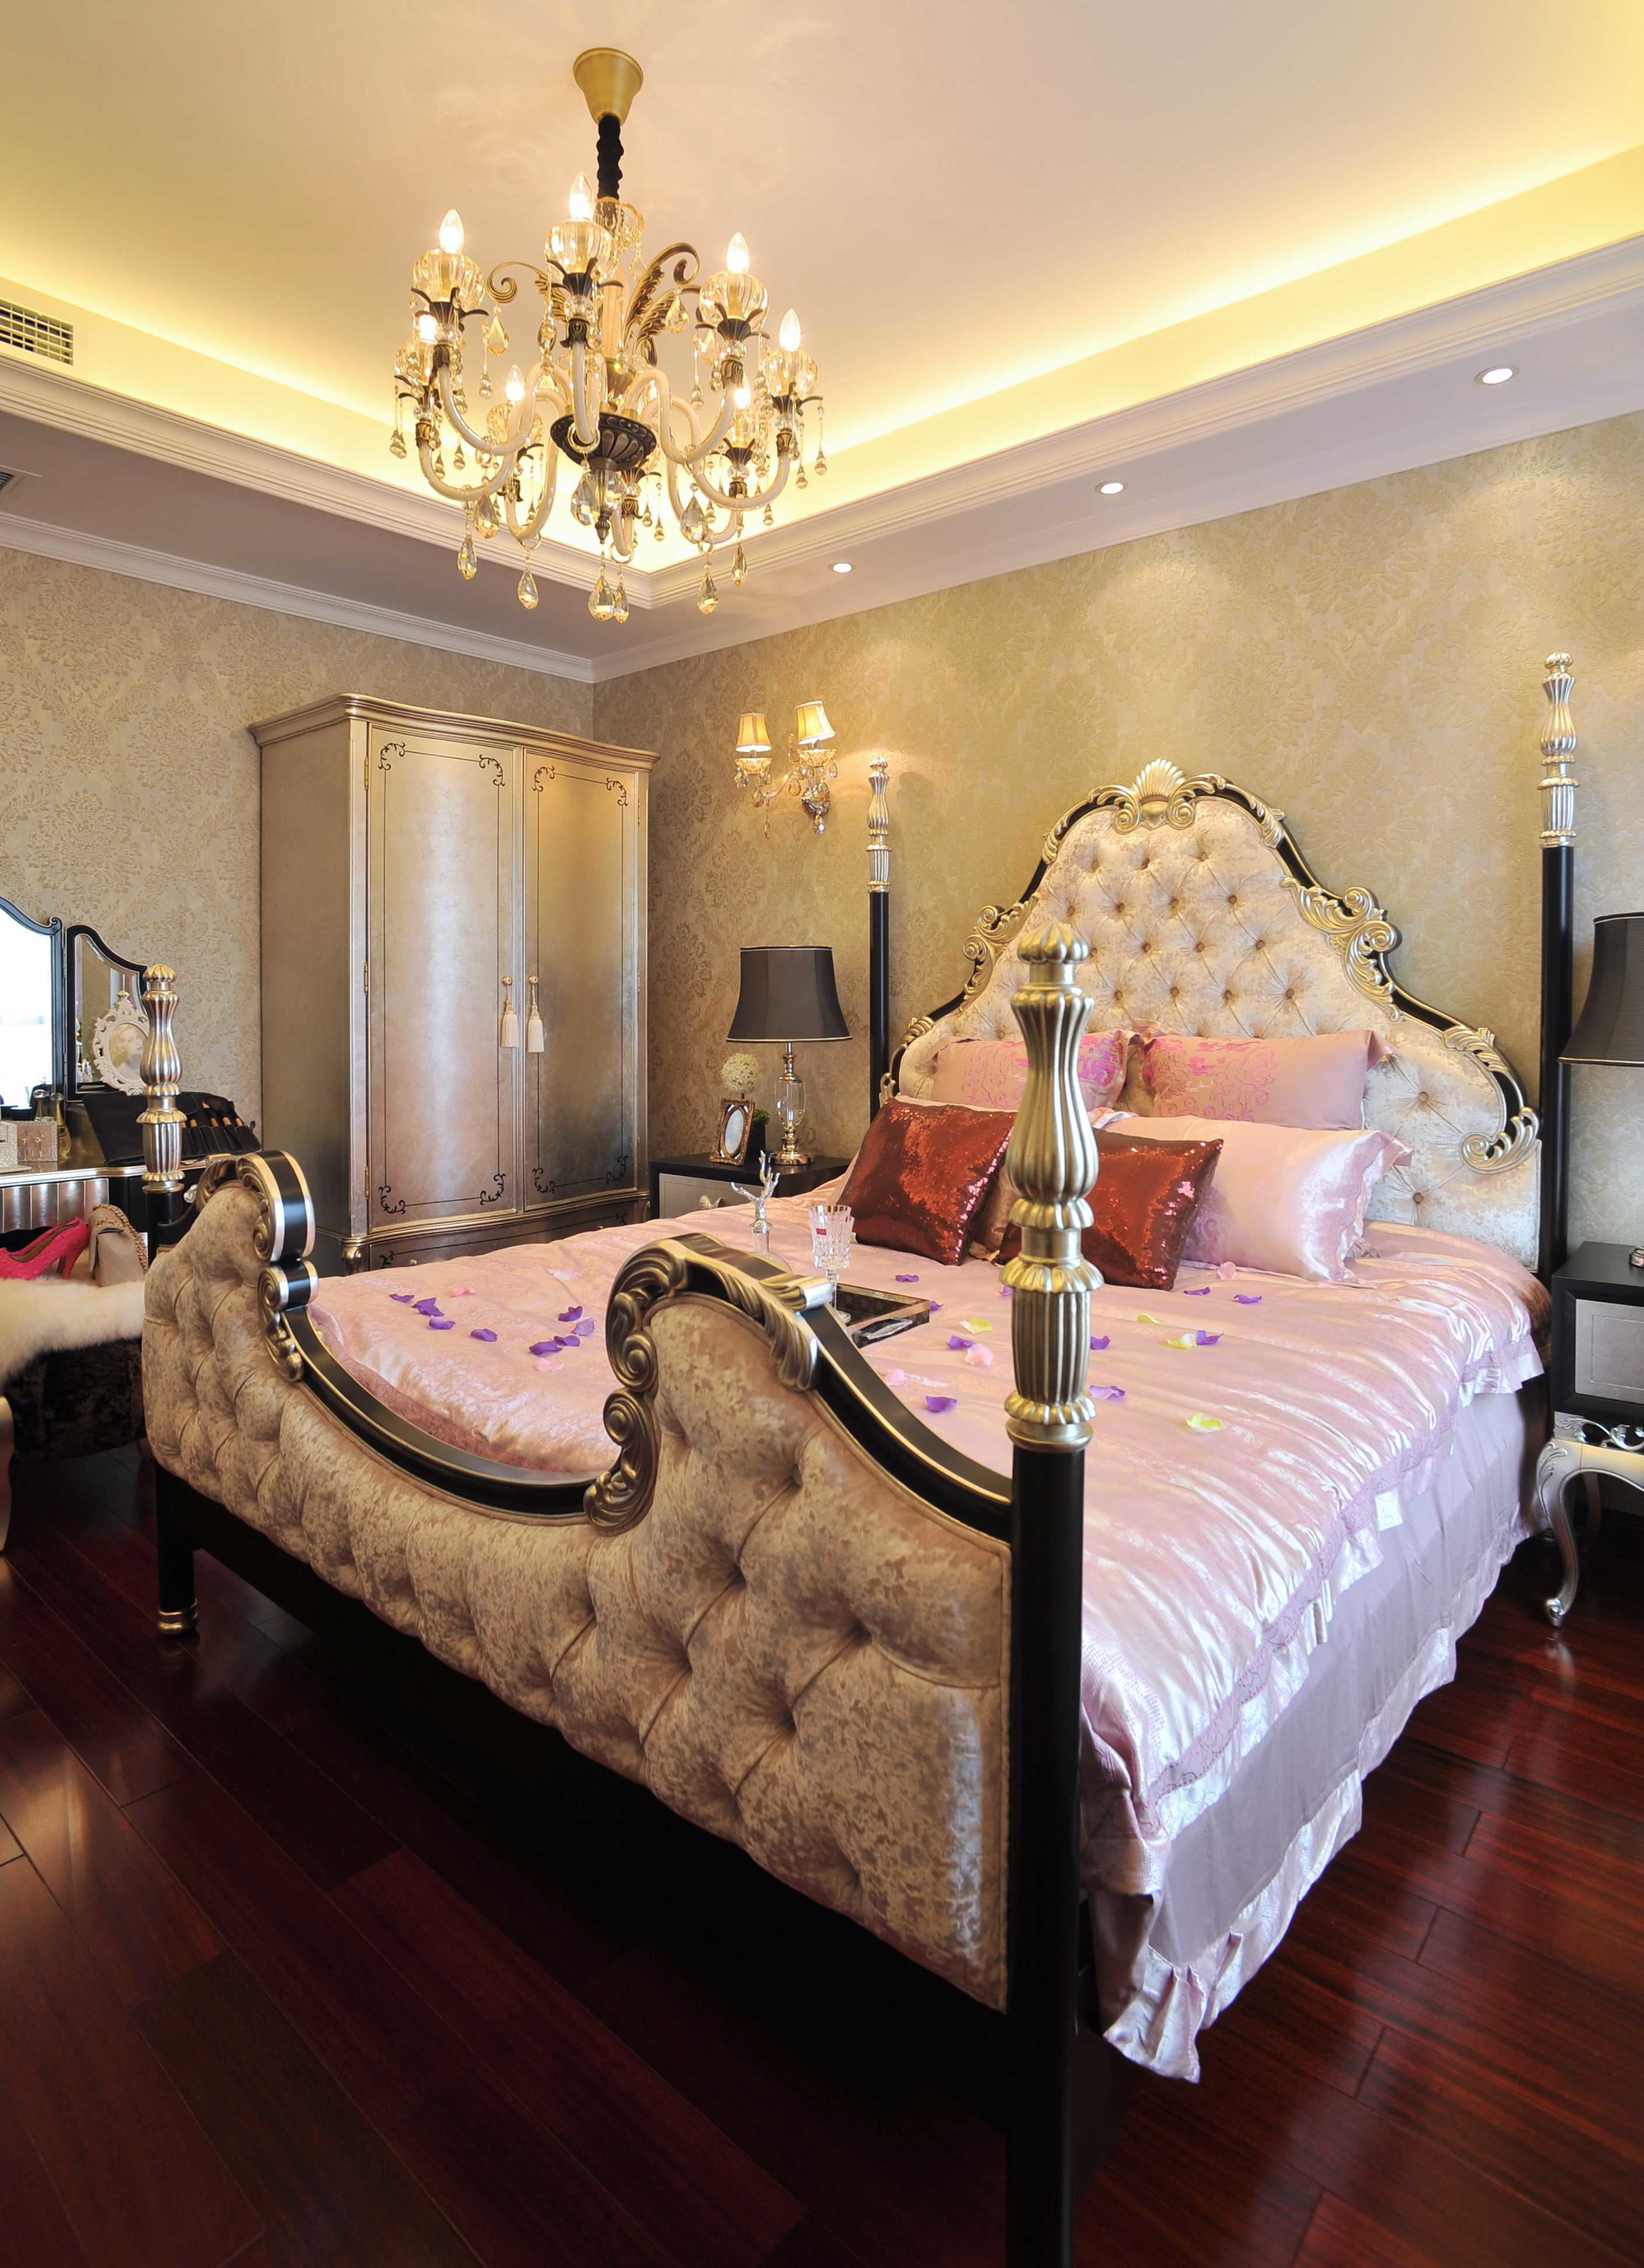 欧式 旧房改造 复式 LOFT 装修风格 卧室图片来自北京生活家装饰公司在160平 复式欧式风格装修的分享